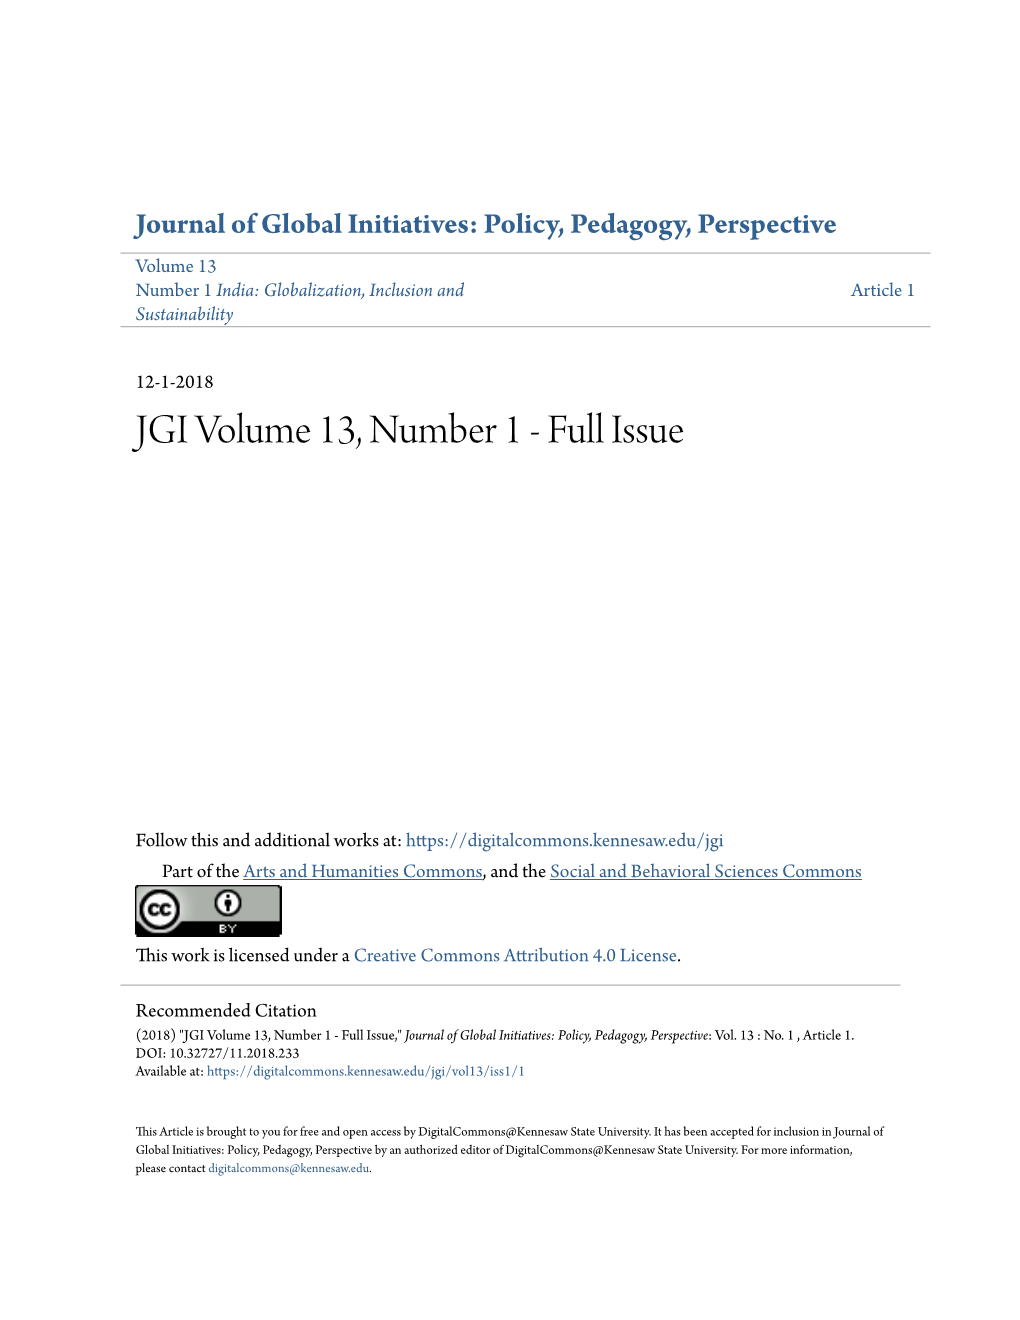 JGI Volume 13, Number 1 - Full Issue